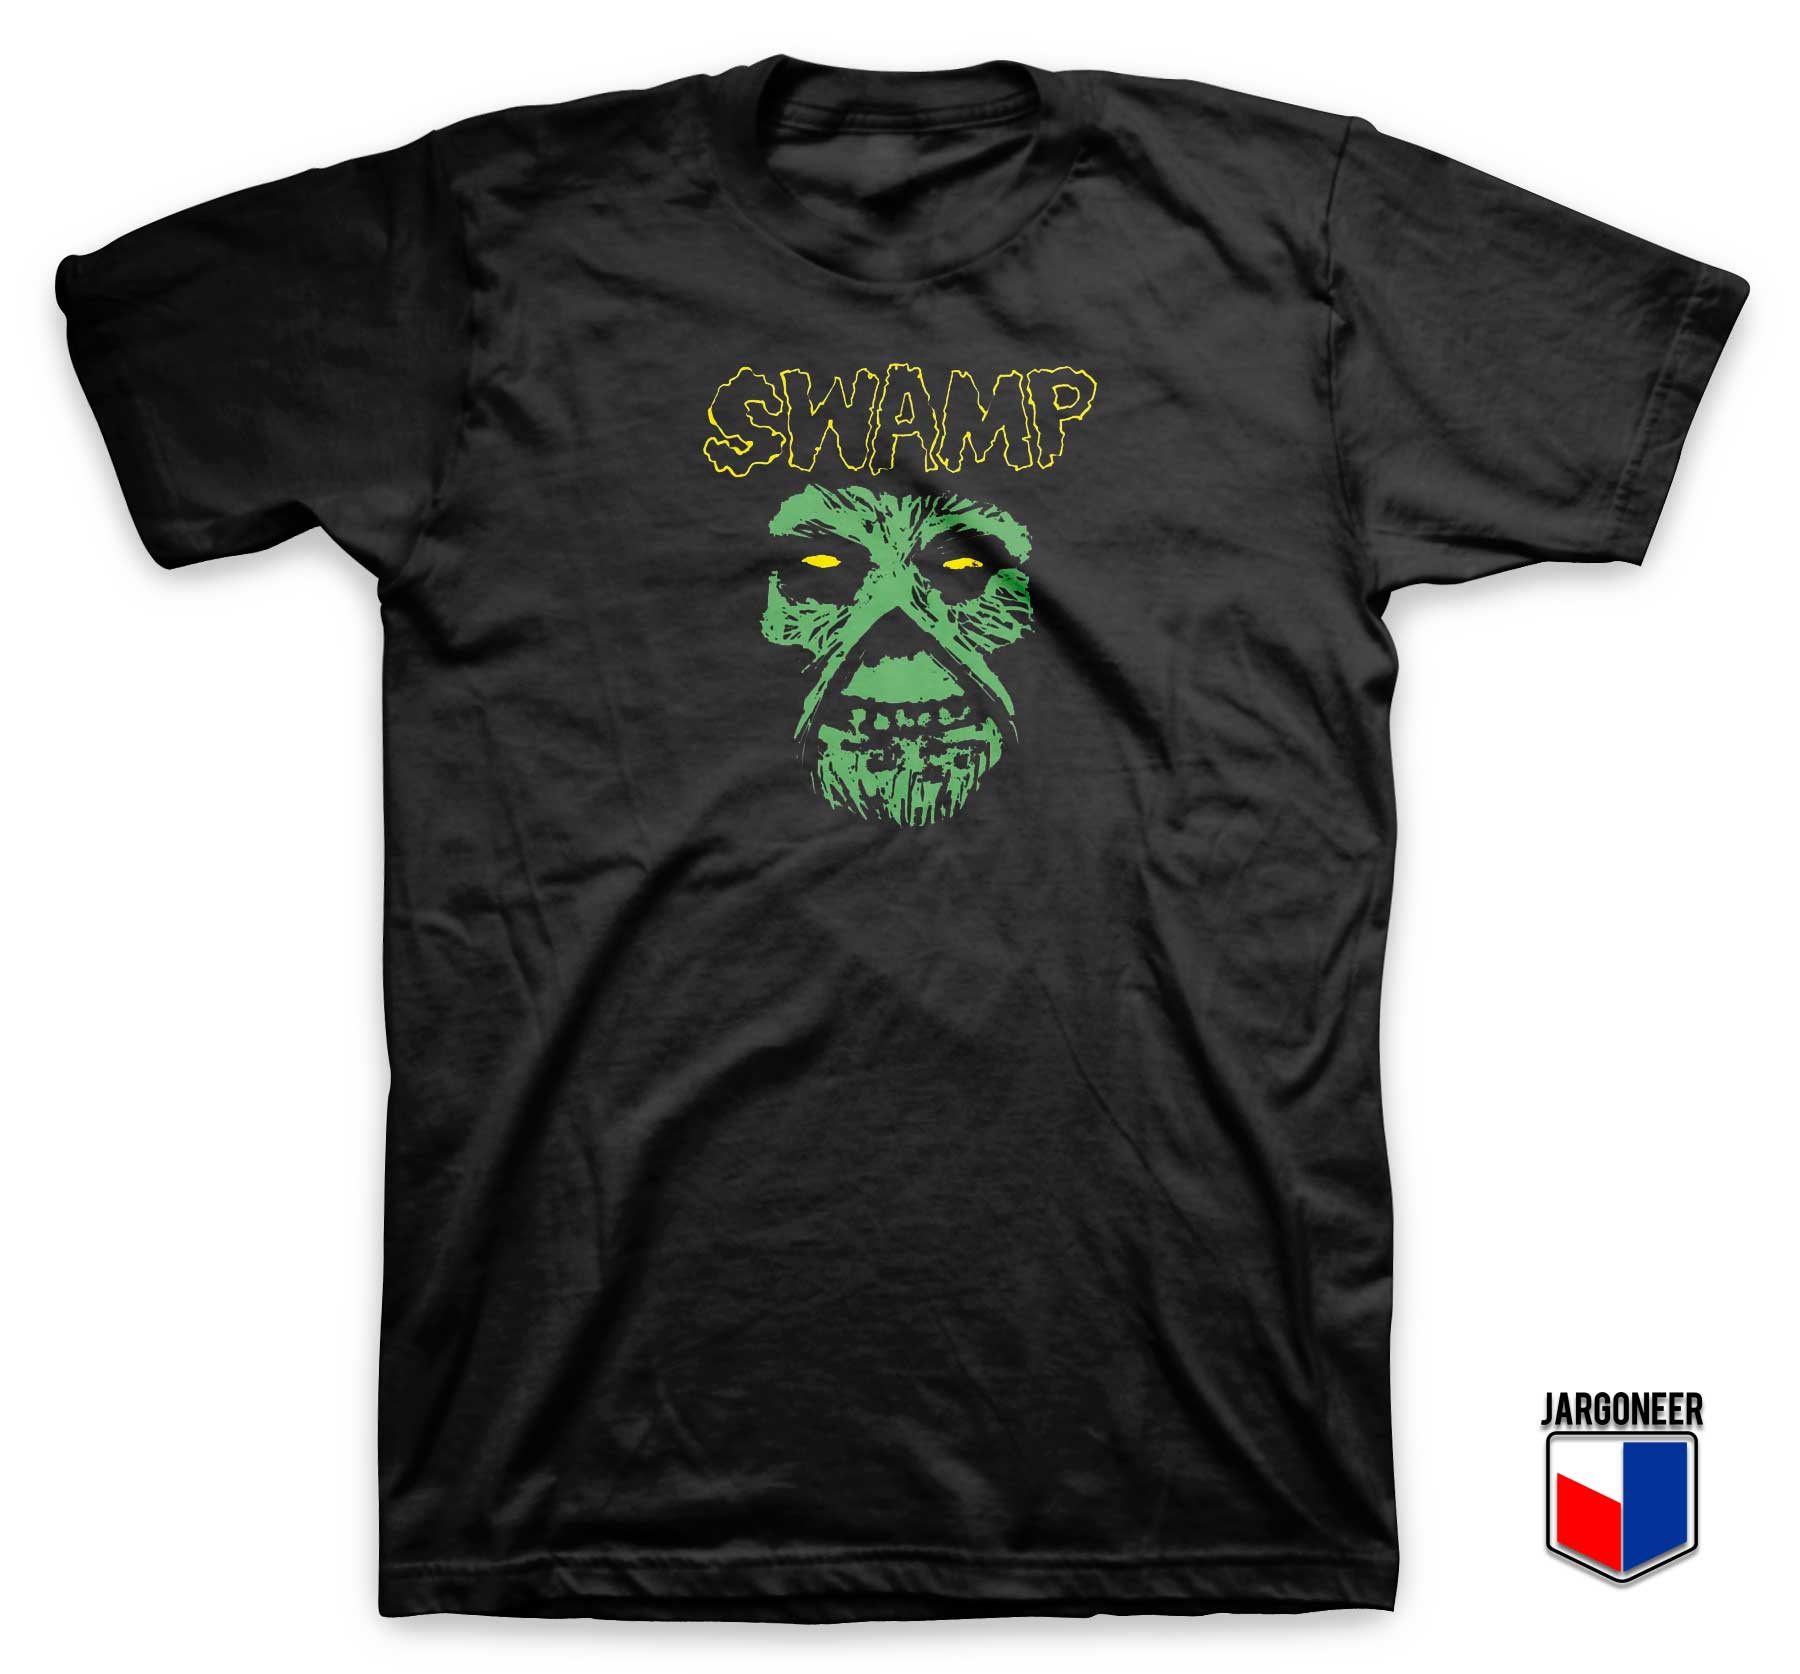 Misfits Swamp Parody T Shirt - Shop Unique Graphic Cool Shirt Designs